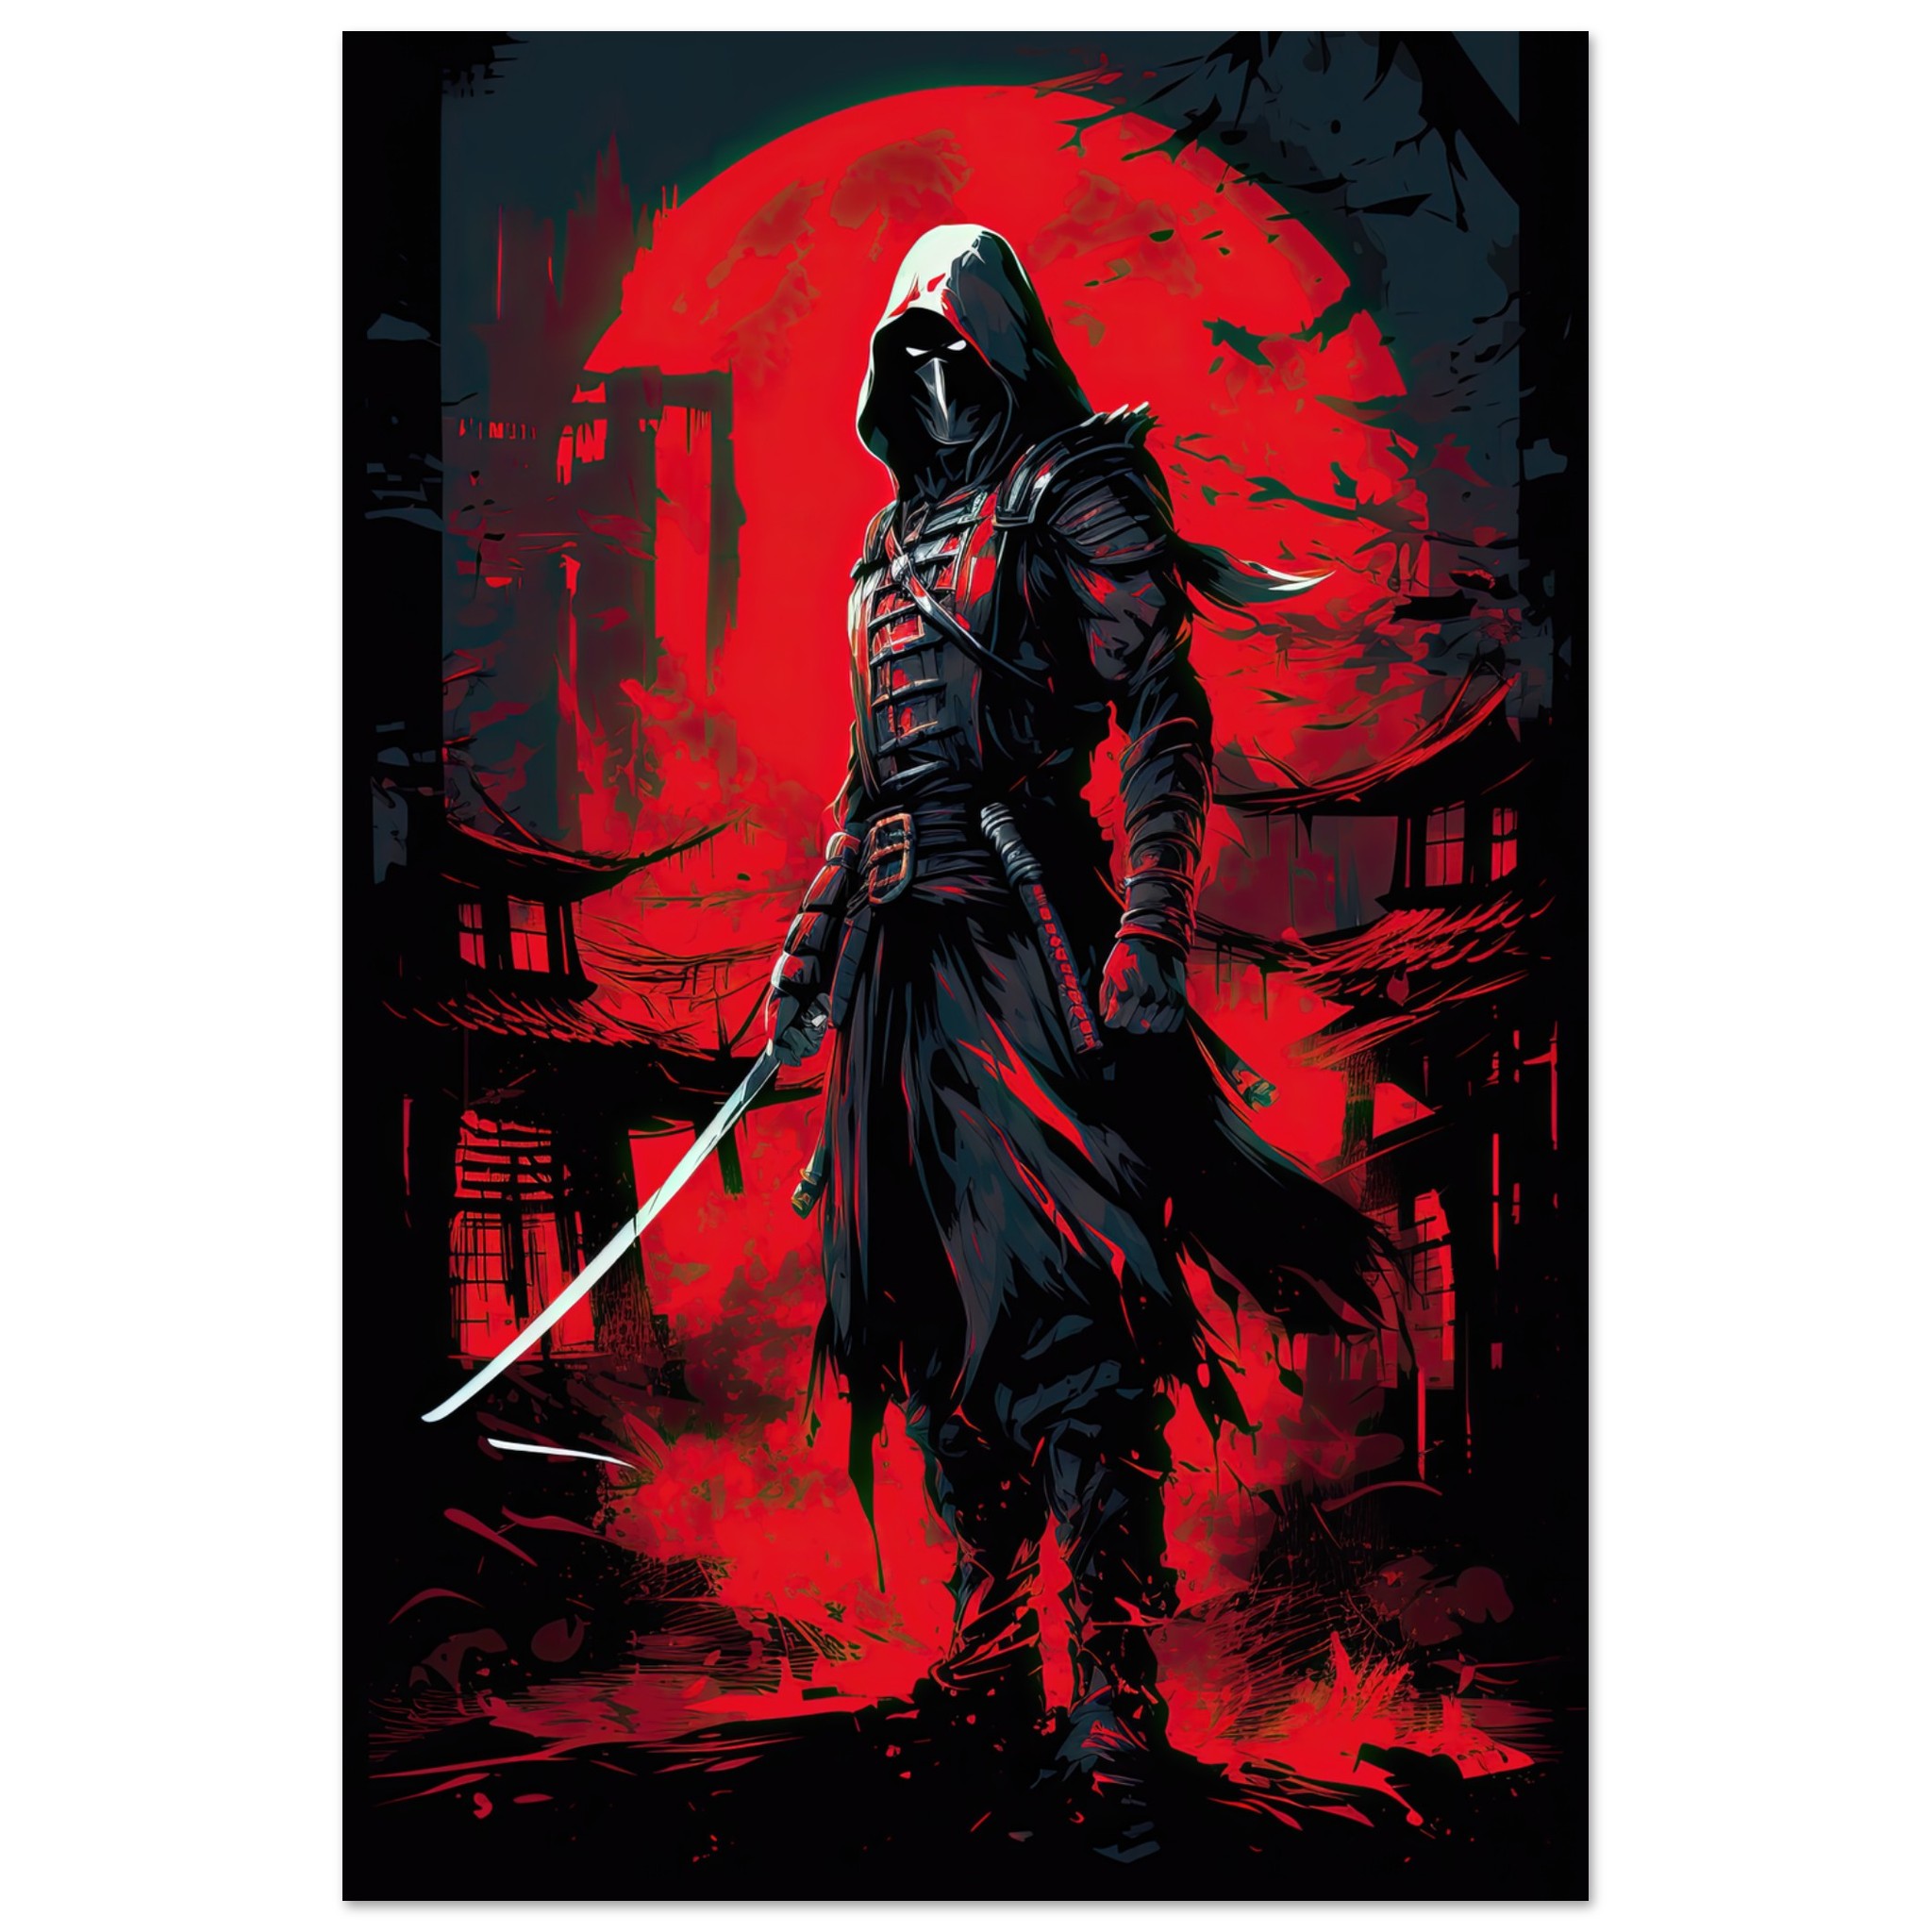 Stealthy Ninja Assassin Poster